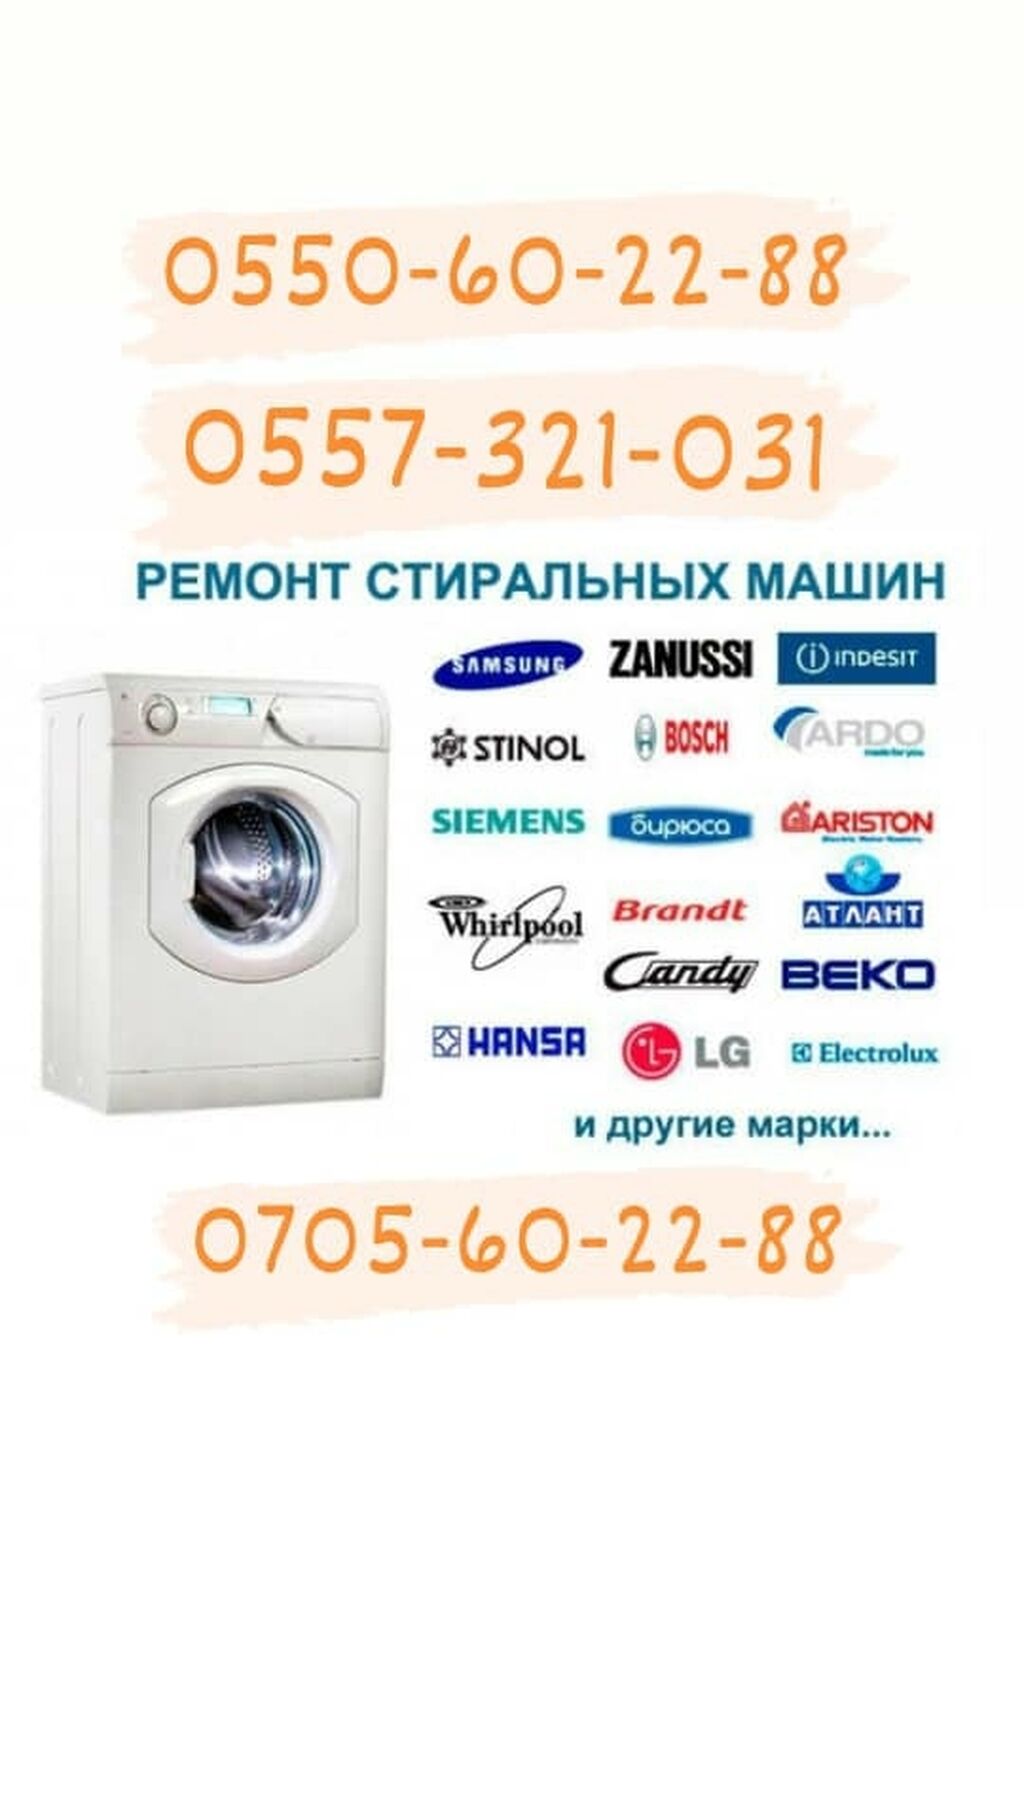 Ремонт стиральных машин brandt. Договор ремонт стиральной машины. Ремонт стиральных машин в Бишкеке.